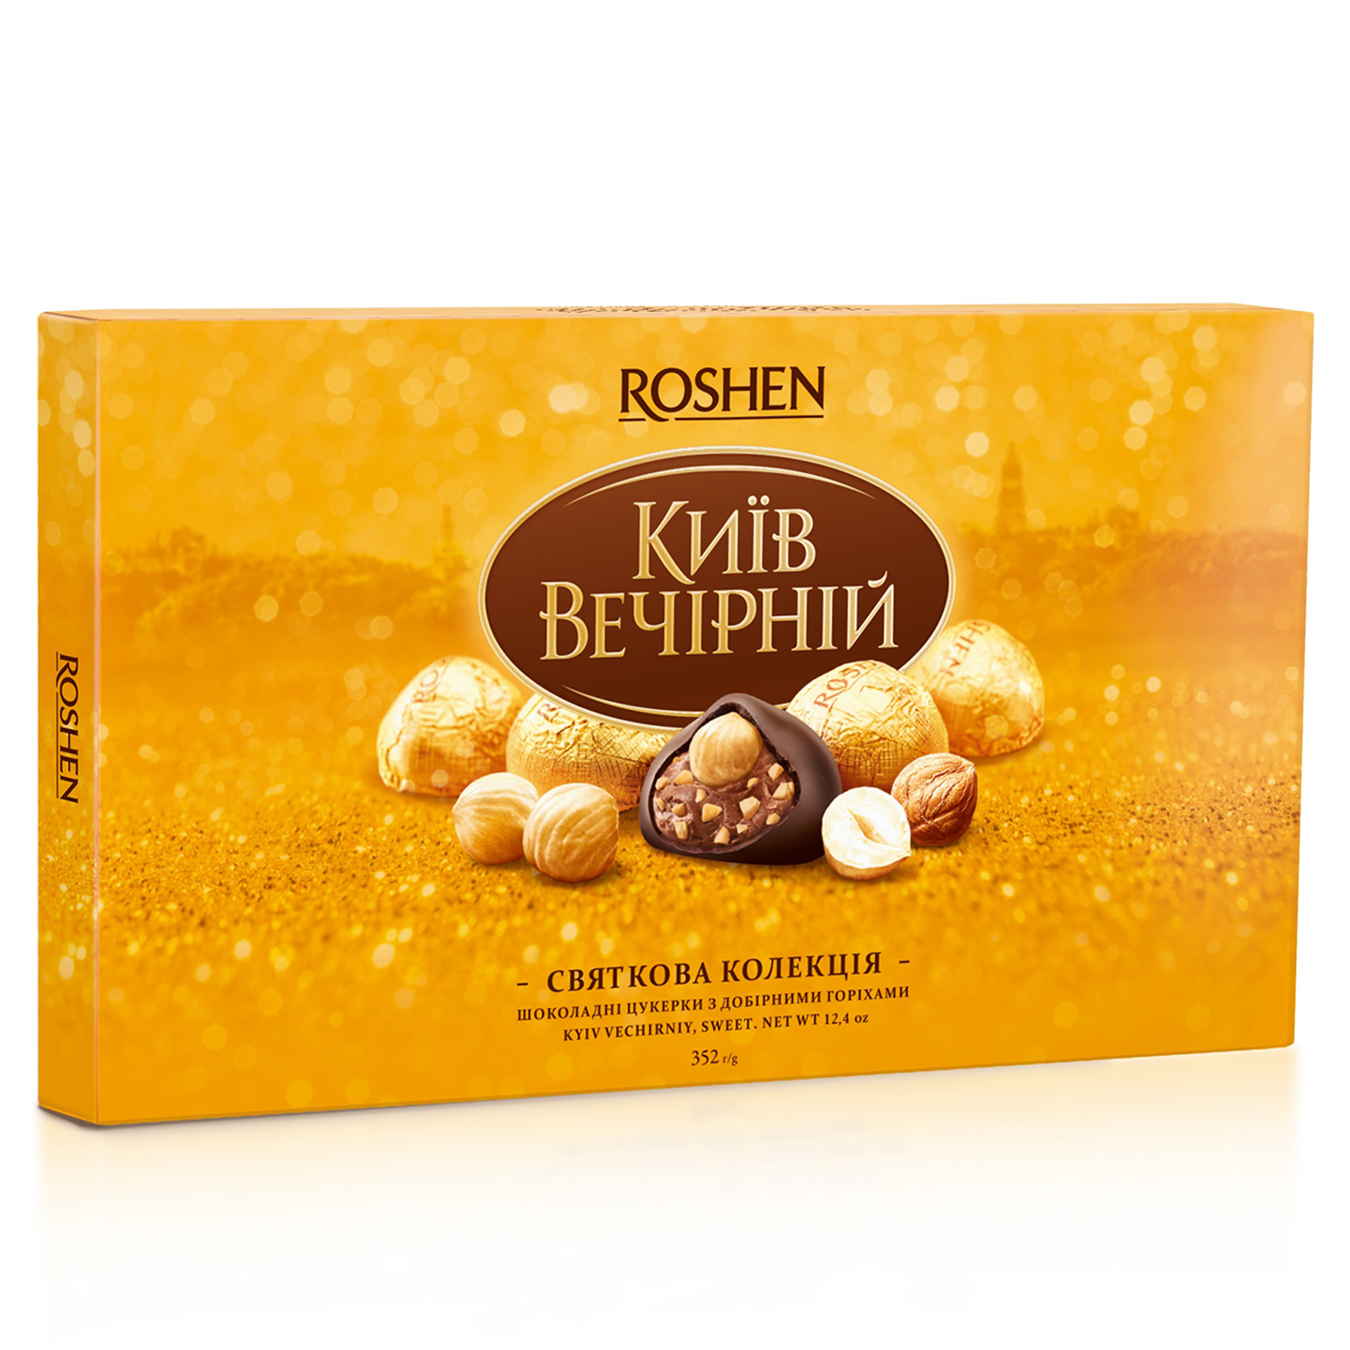 Roshen Kyiv vechirniy chocolate Candy 352g